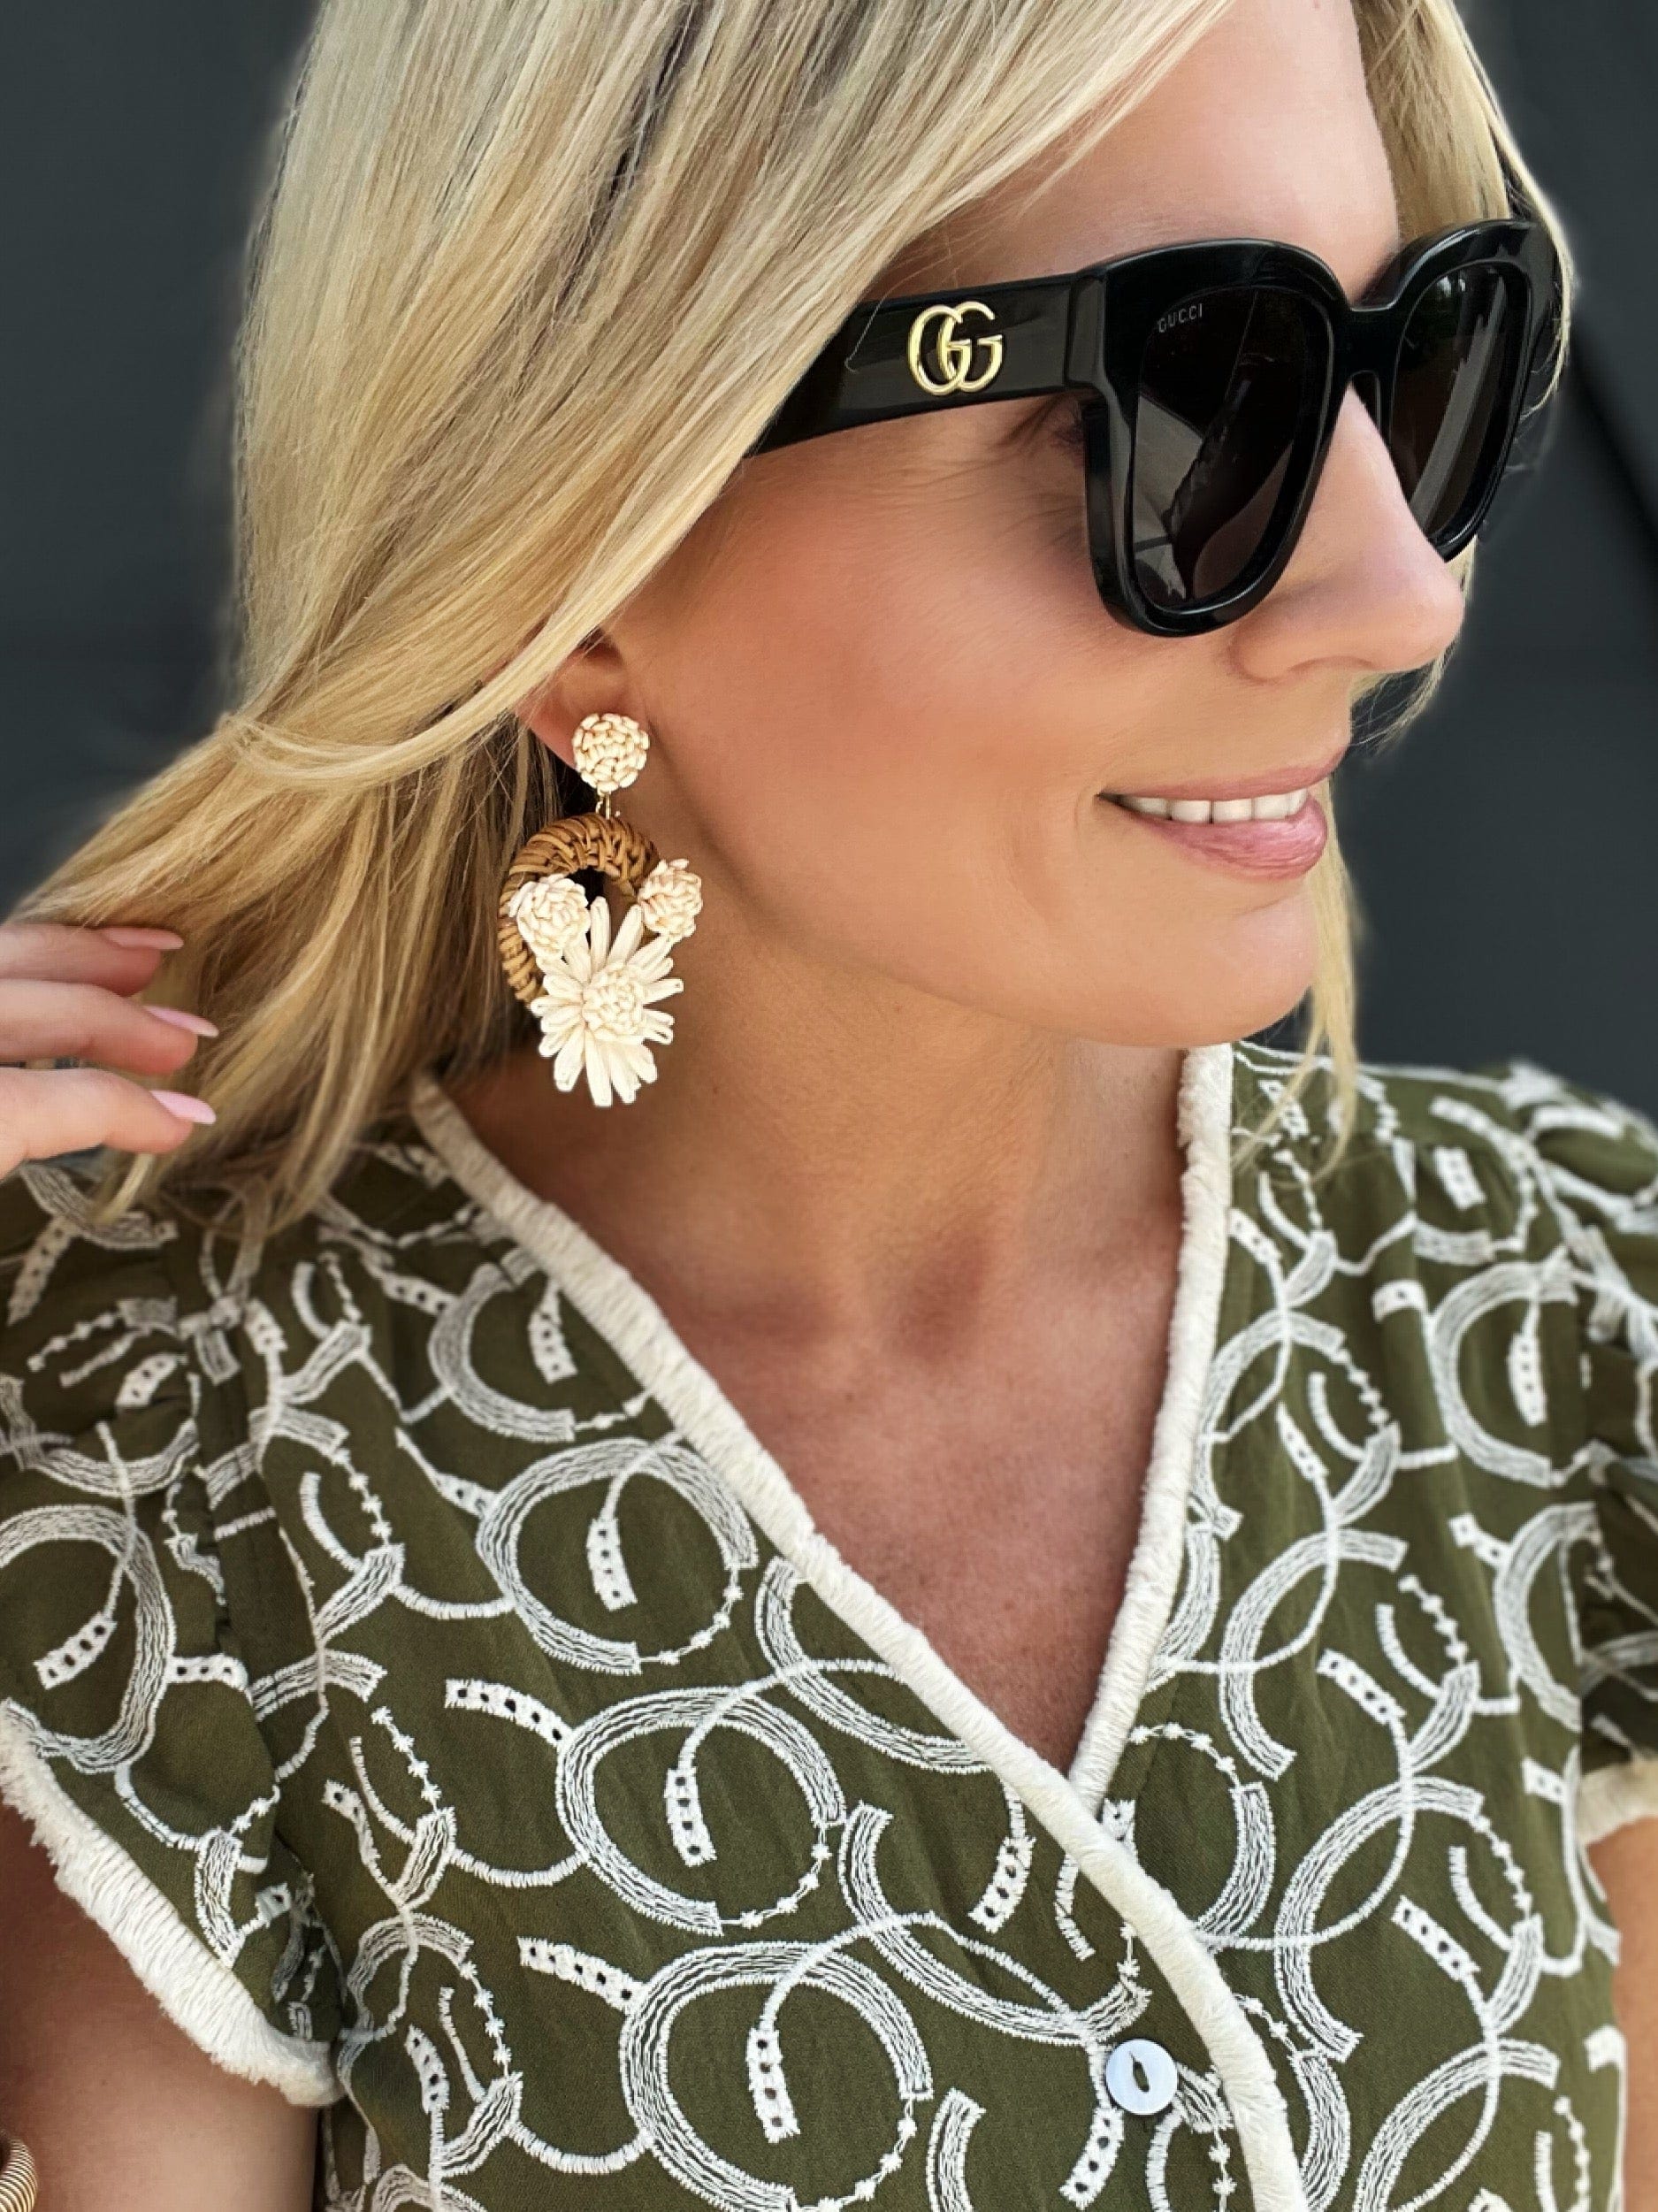 fame accessories Jewelry - Earrings Raffia Flower Braided Hoop Drop Earrings In Ivory 04560630